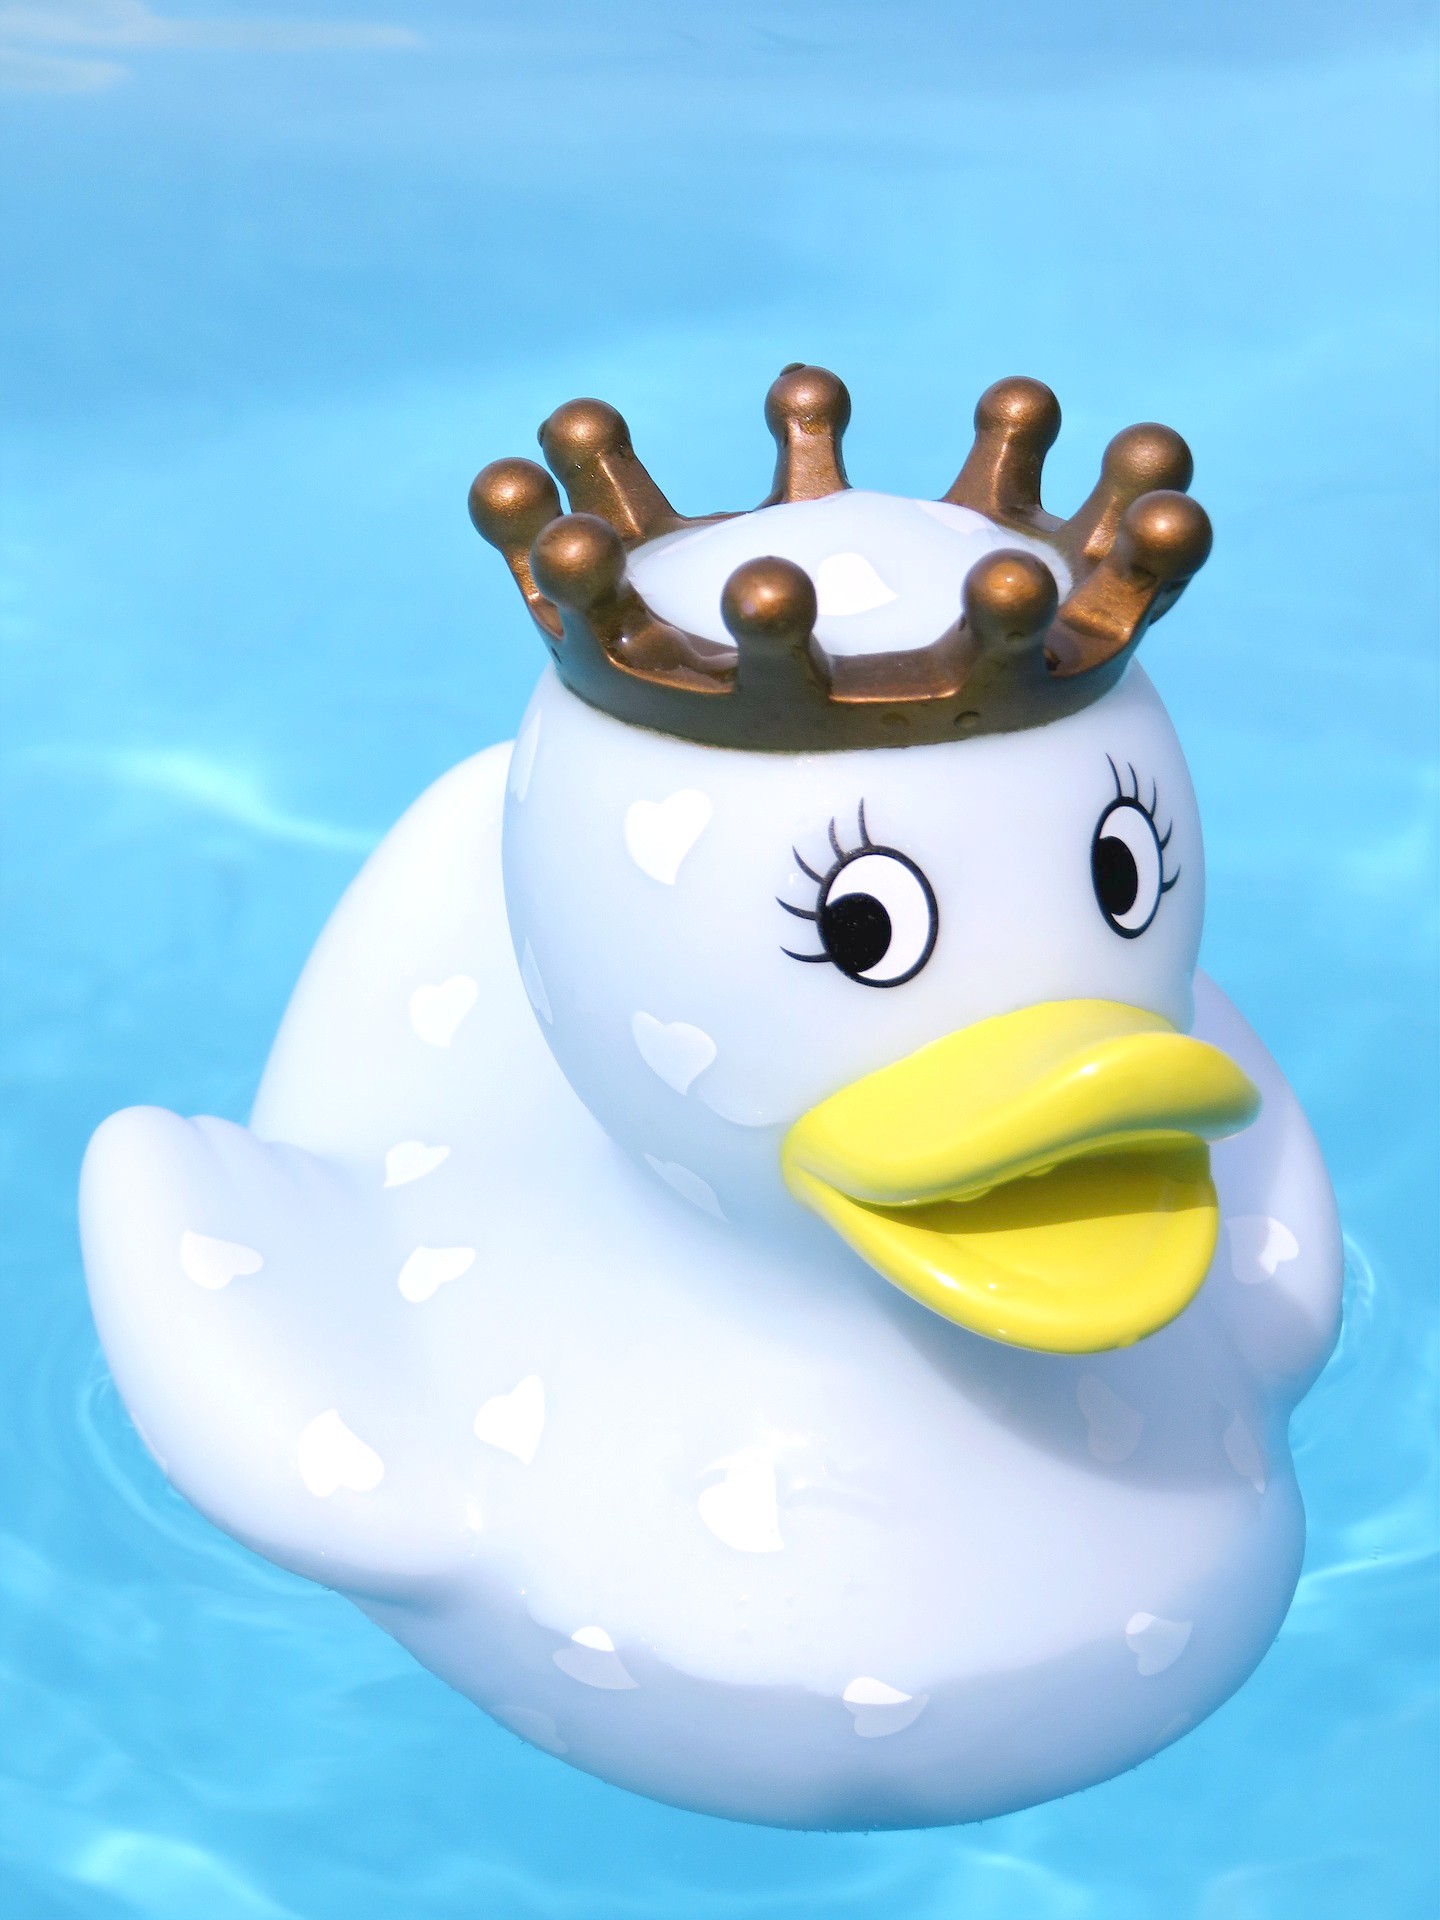 <img src="duck.jpg" alt="king toy duck in water"/> 